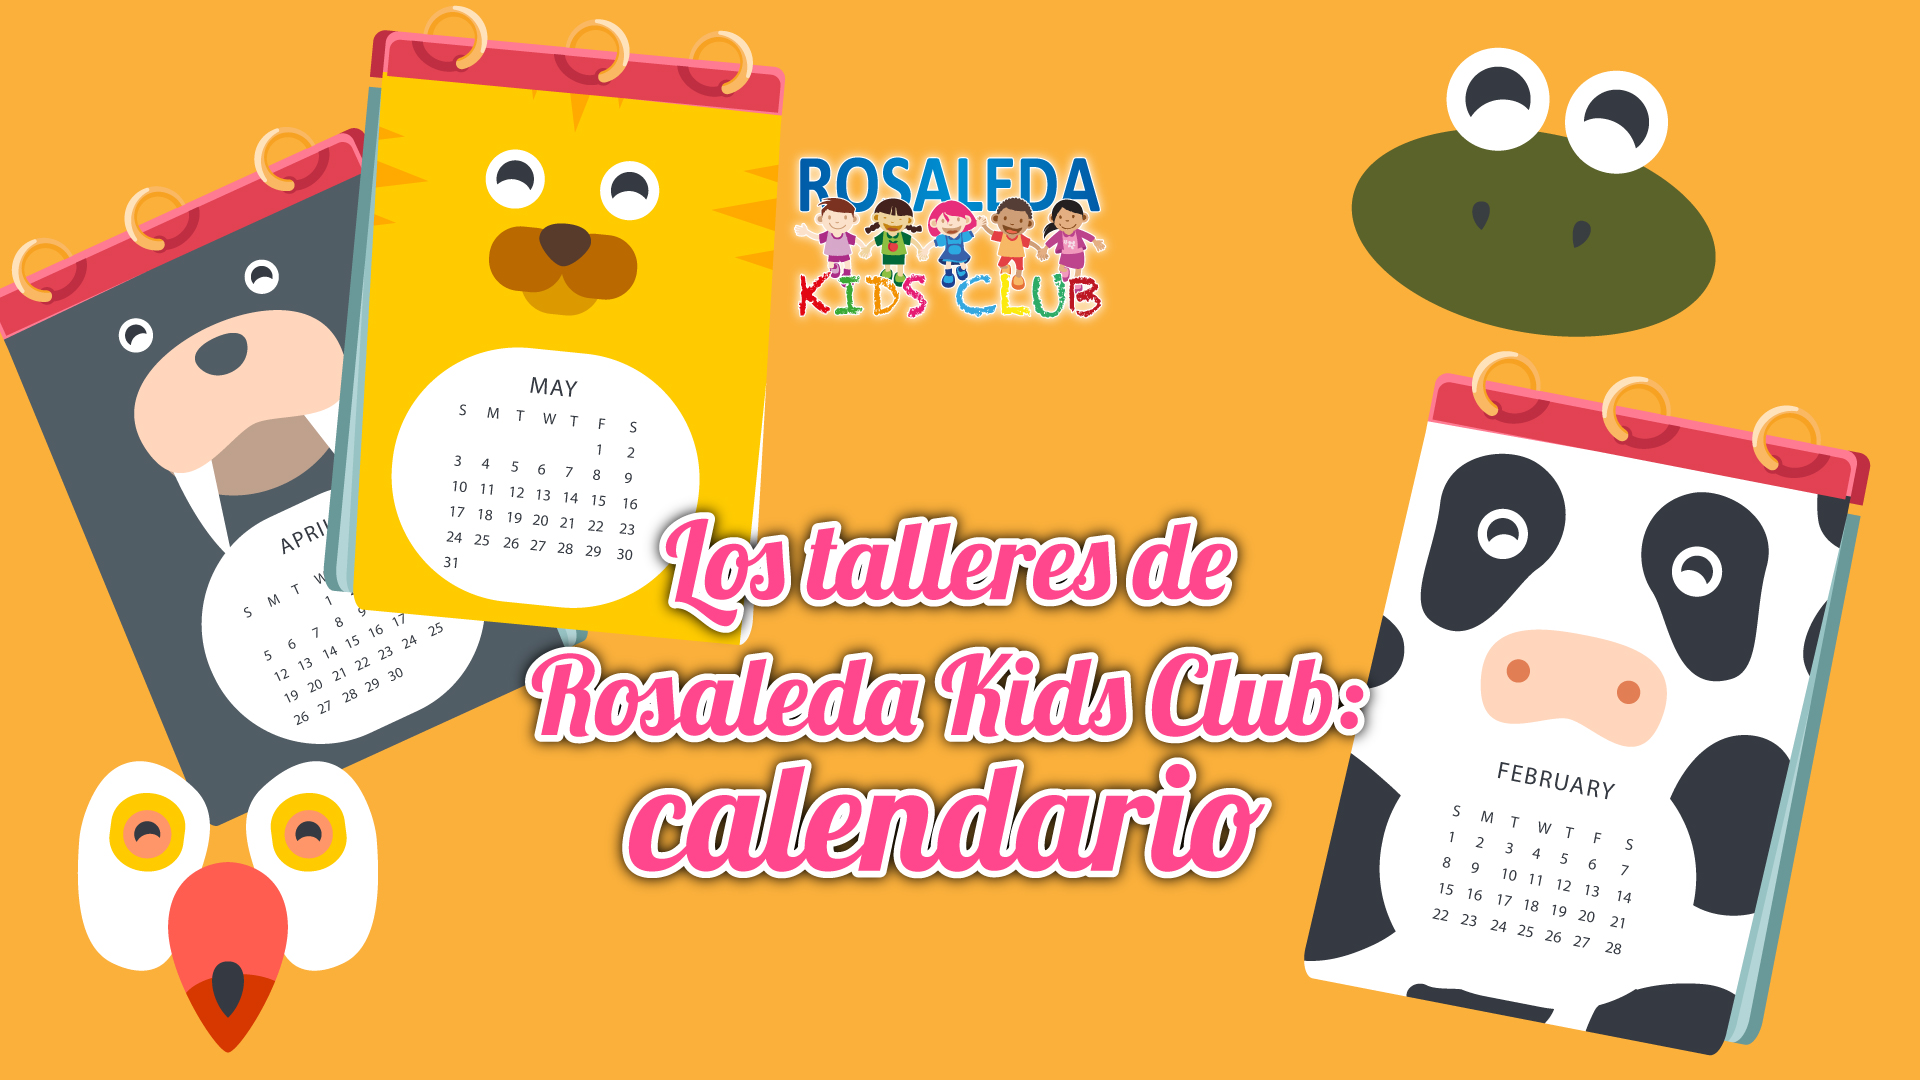 Las talleres de Rosaleda Kids Club: calendario